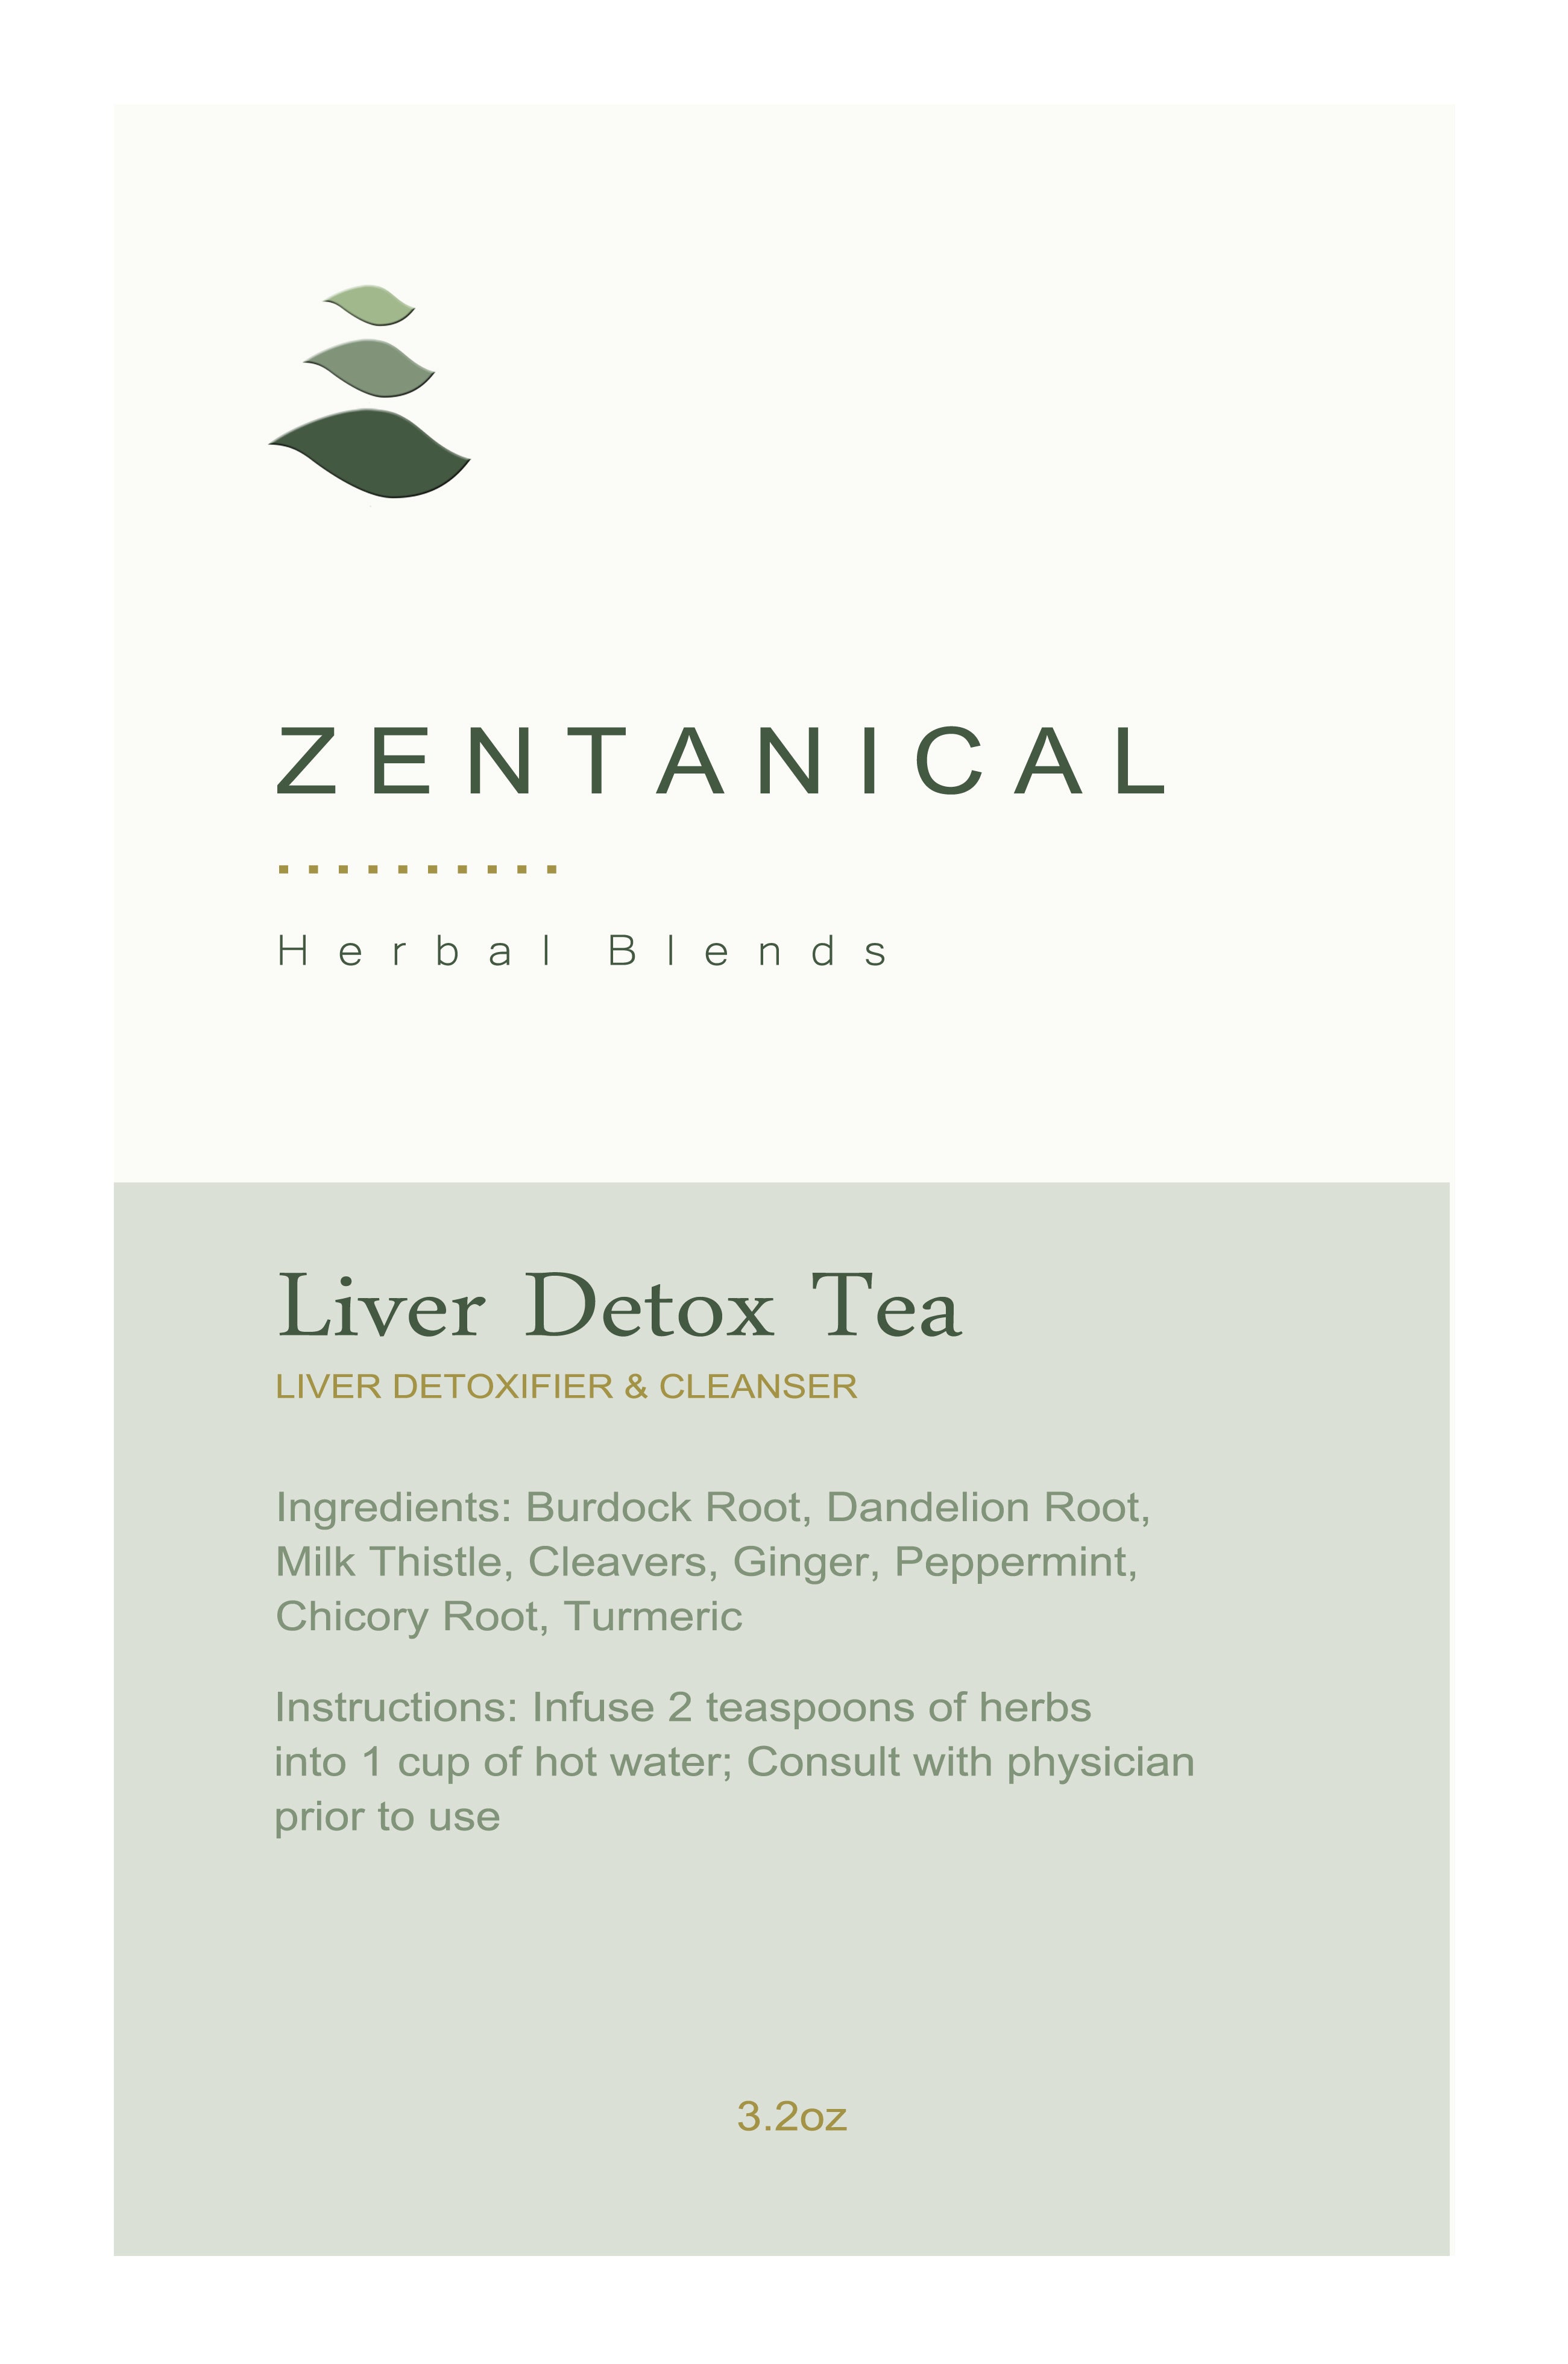 Liver Detox Tea